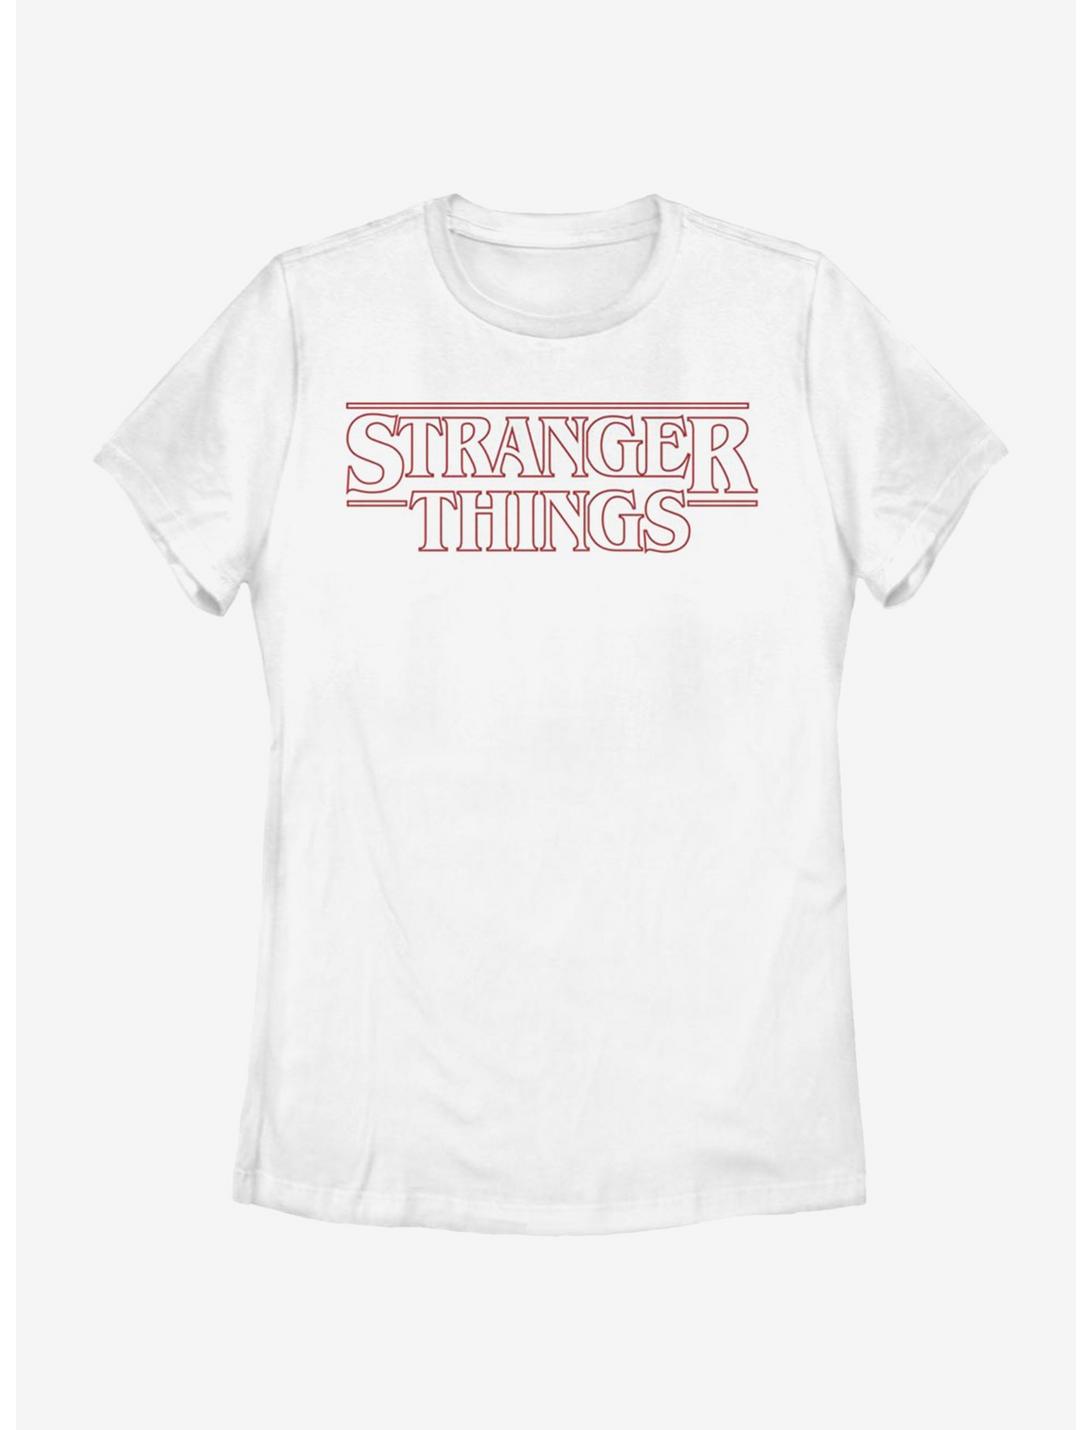 Stranger Things Red Outline Logo Womens T-Shirt, WHITE, hi-res